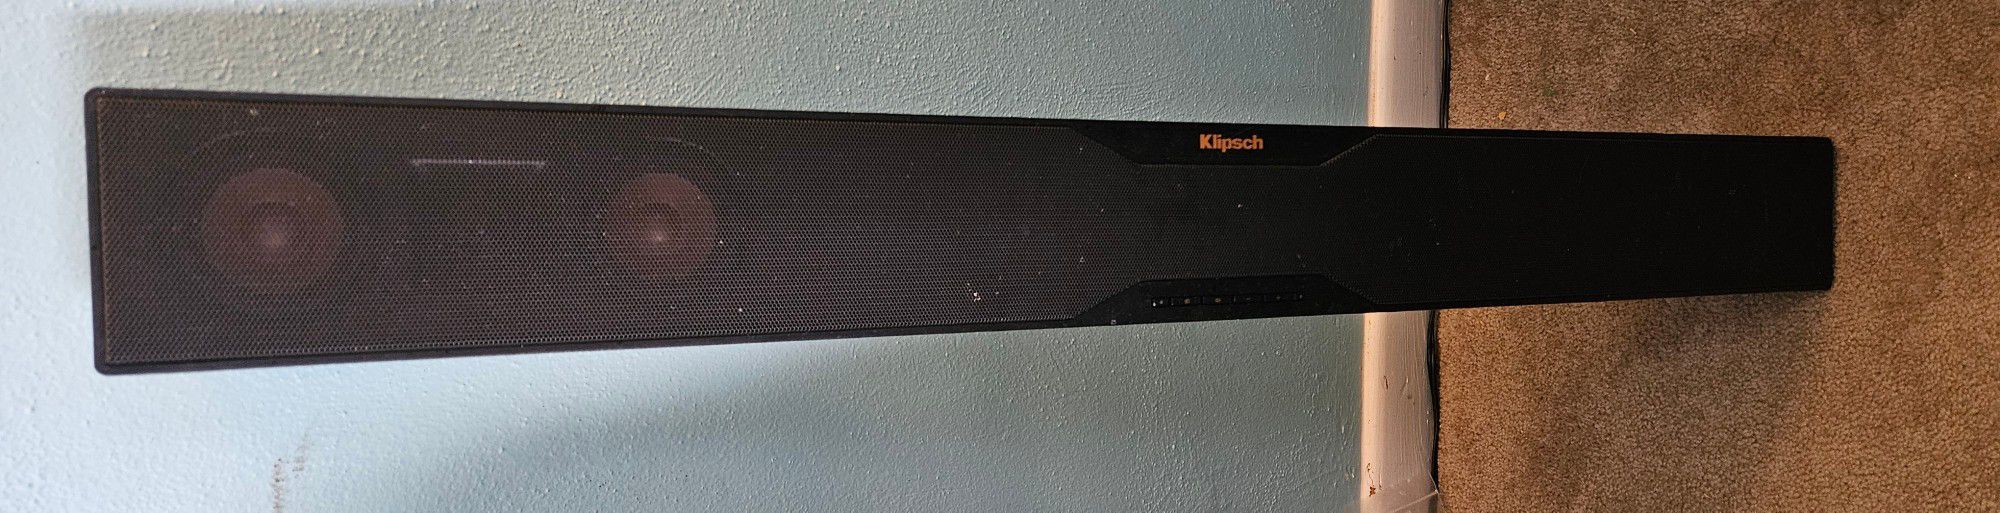 Klipsch Sound Bar R-20B With Wireless Subwoofer 